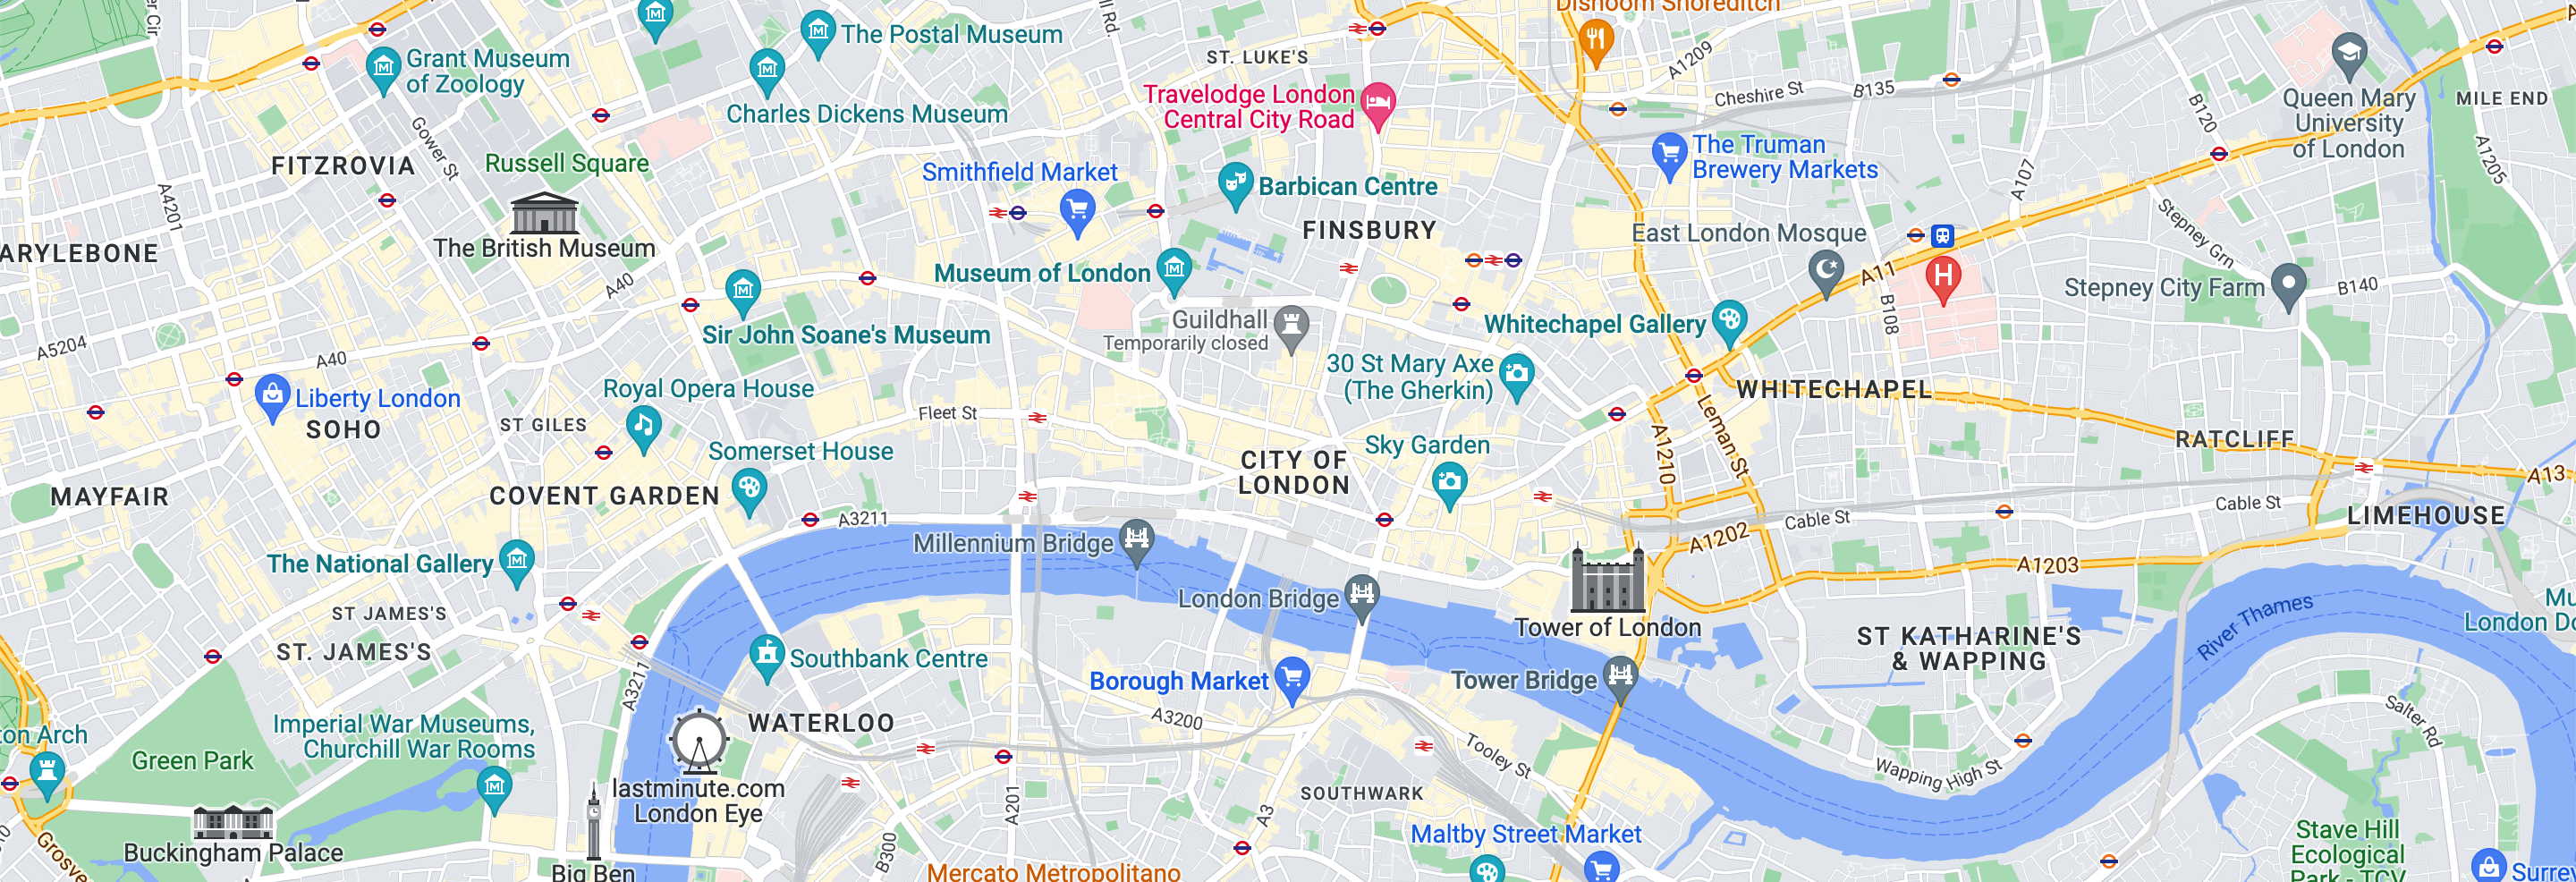 Copier Services City Of London